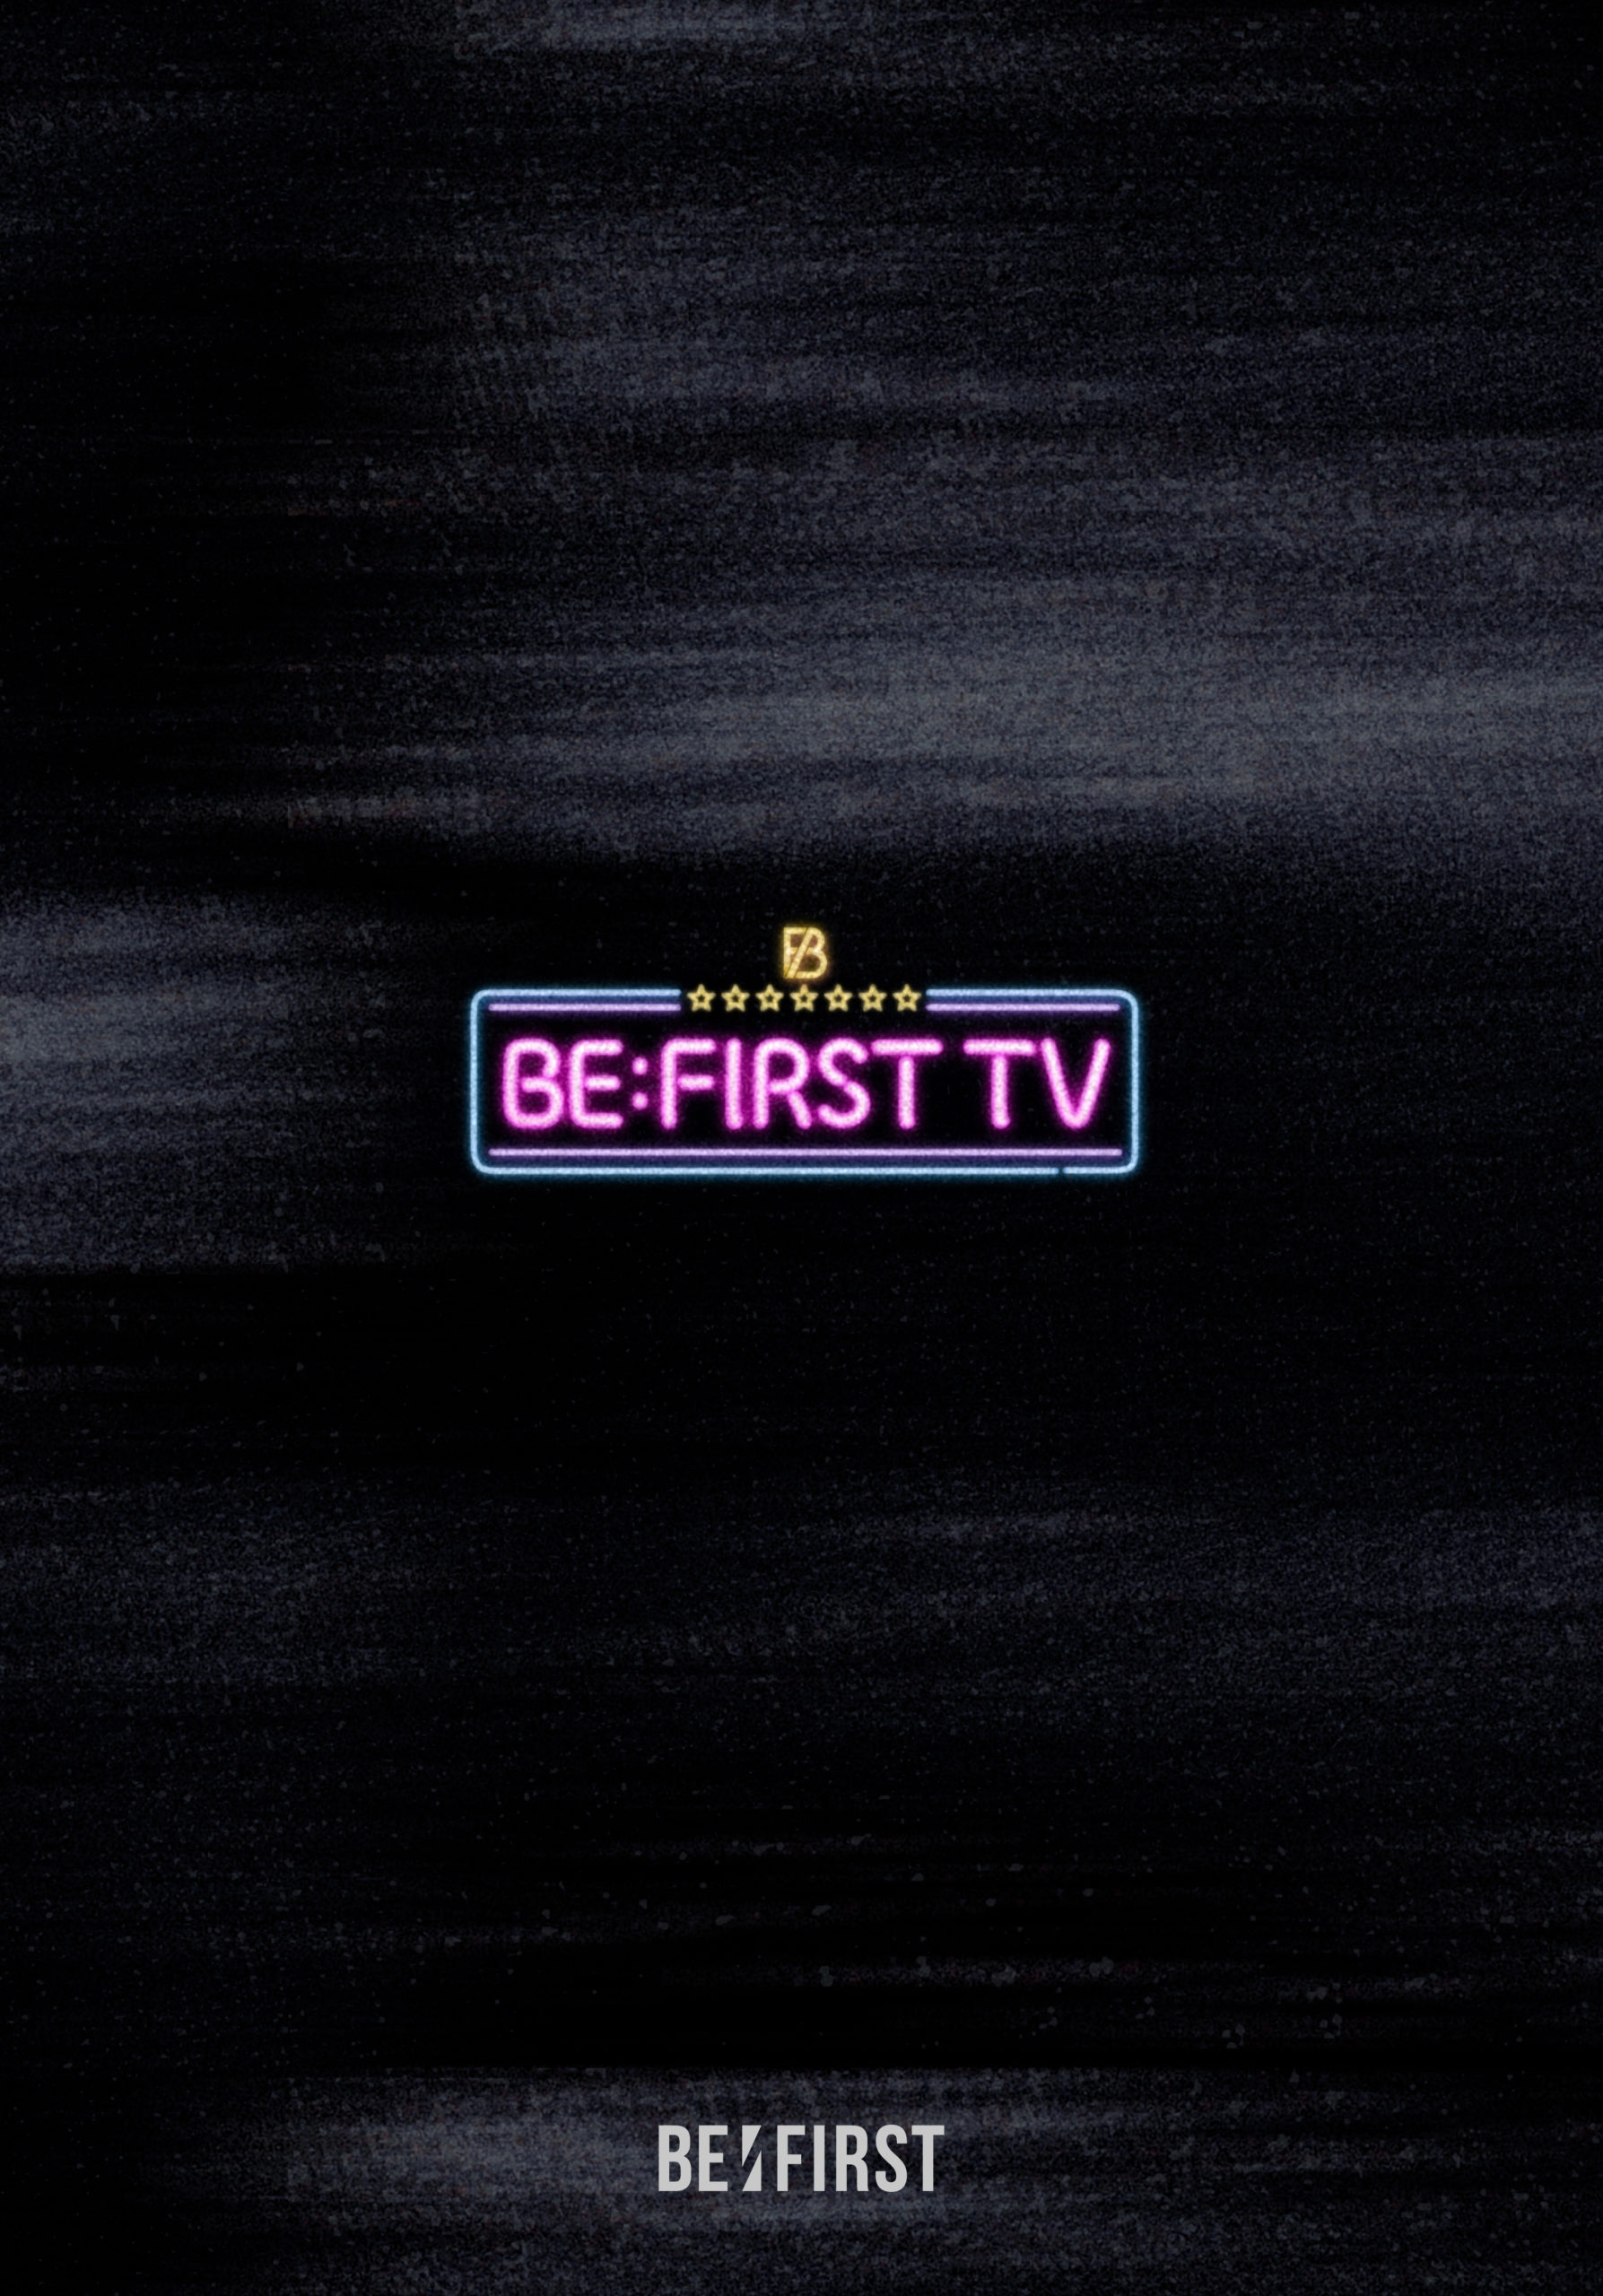 2023/05/31(水)「BE:FIRST TV」DVD & Blu-ray発売 | BE:FIRST